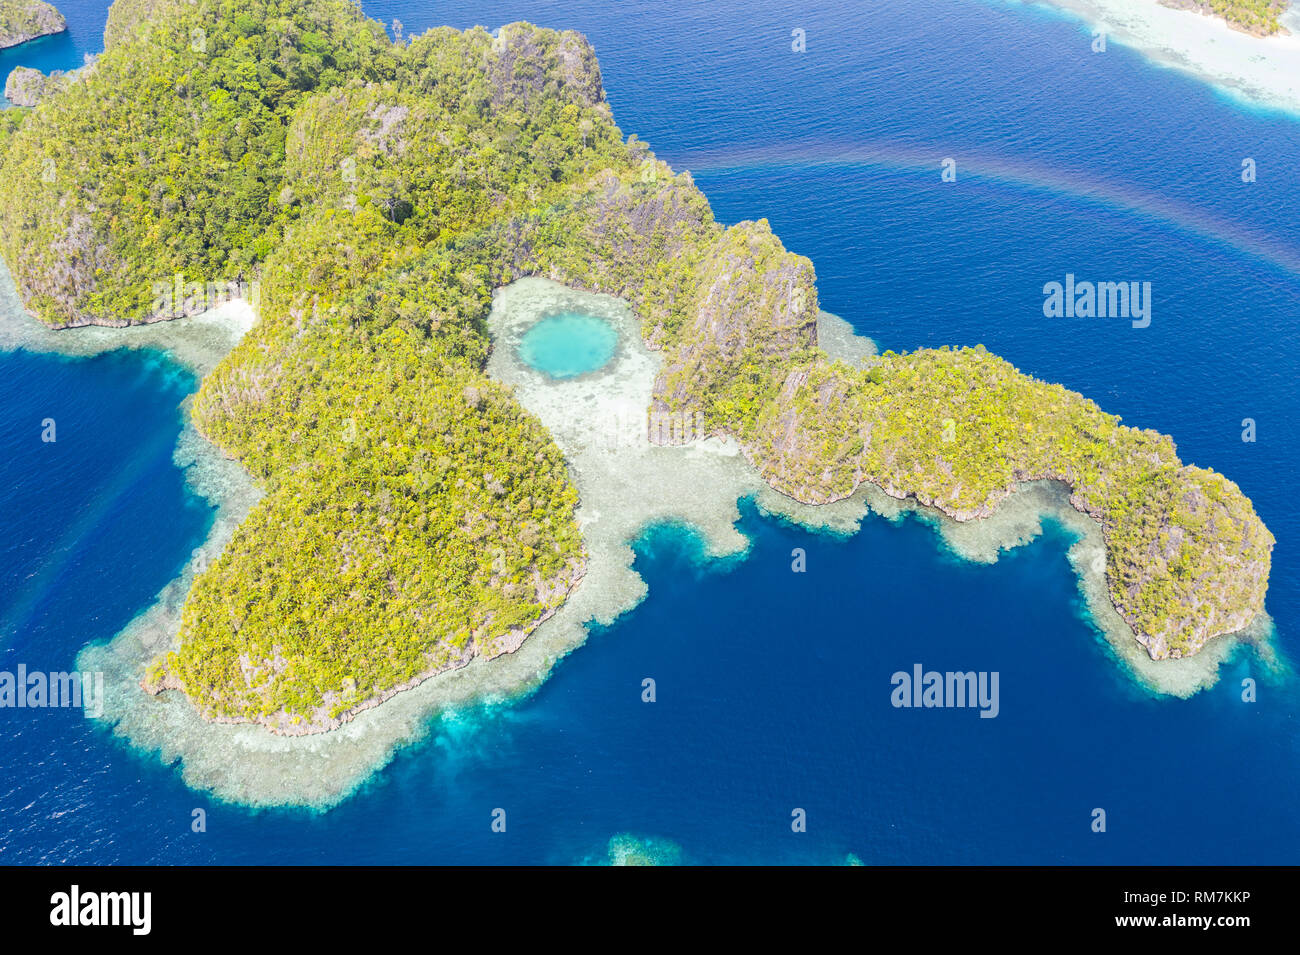 Ein Regenbogen erscheint oben ein robustes Kalkstein Insel in Raja Ampat, Indonesien. Dieser abgelegene, tropische Region ist für seine marine Artenvielfalt bekannt. Stockfoto